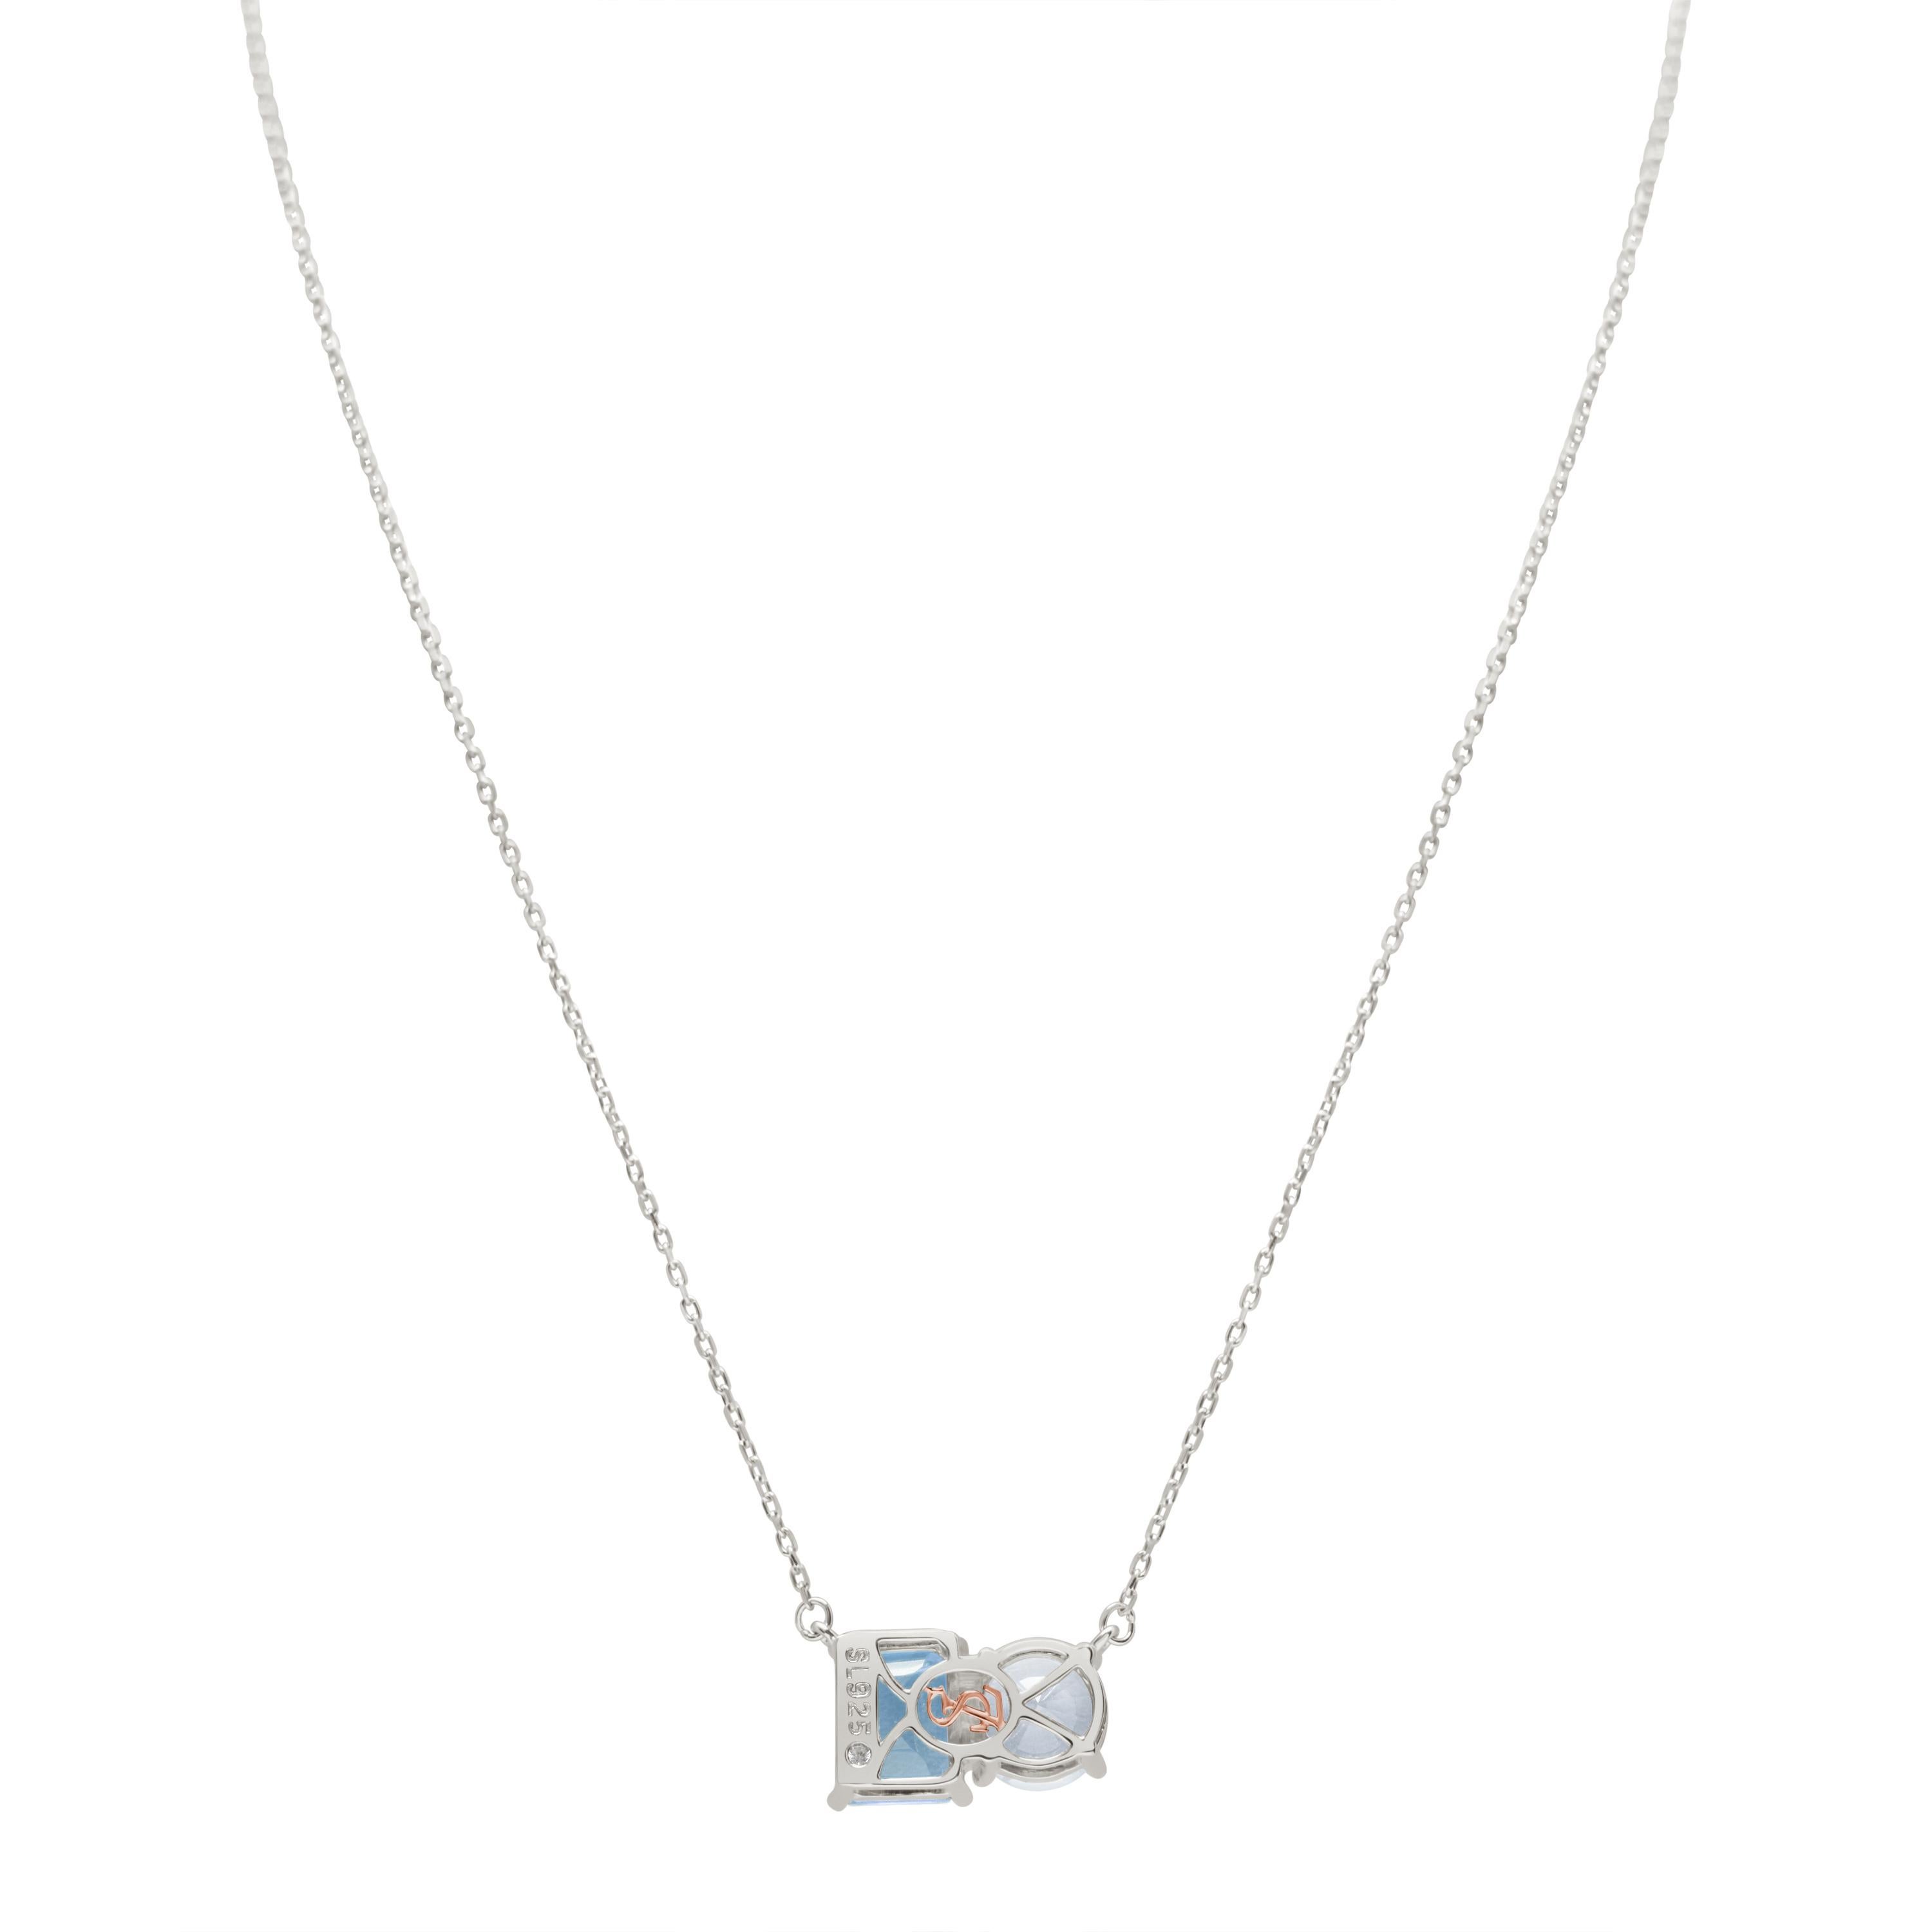 Whiting dans des tons blancs et bleus, ce collier Suzy Levian est tout à fait dans la tendance et présente une topaze blanche de taille ronde et une topaze bleue de taille émeraude parfaitement assorties. Ce collier symbolise l'association parfaite